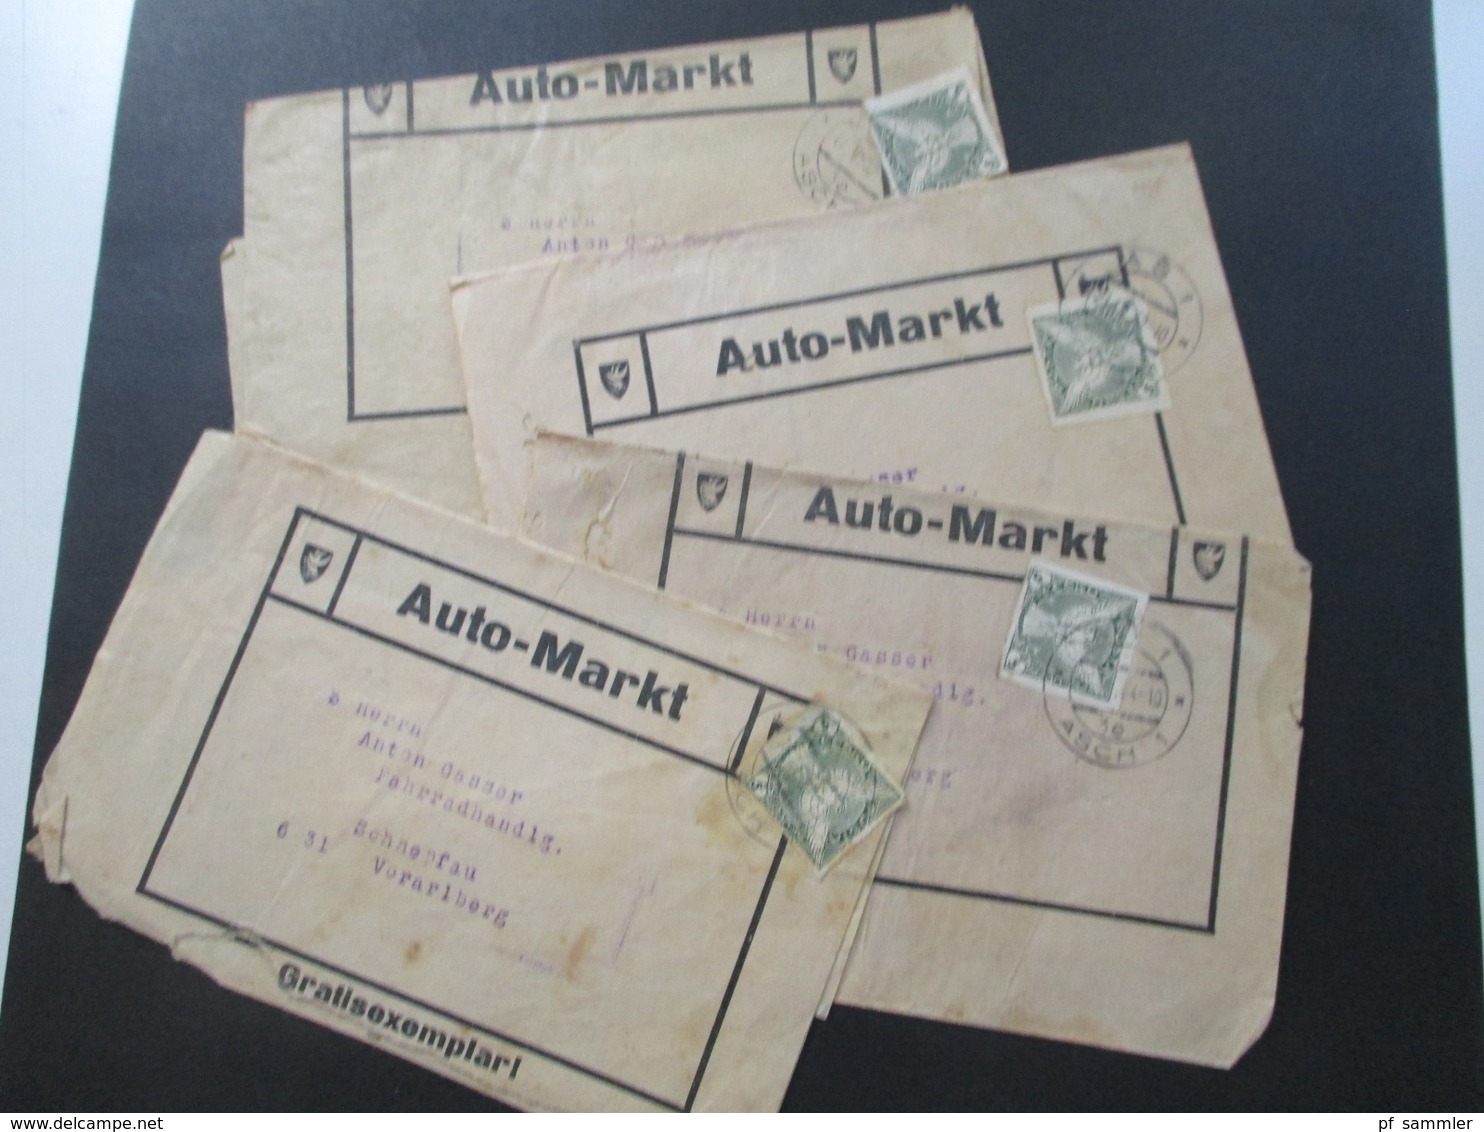 CSSR 1932 Streifbänder Auto Markt Gratisexemplar Stempel As 1 Asch (Sudetenland) Nach Schnepfau Fahrradhandlung - Brieven En Documenten